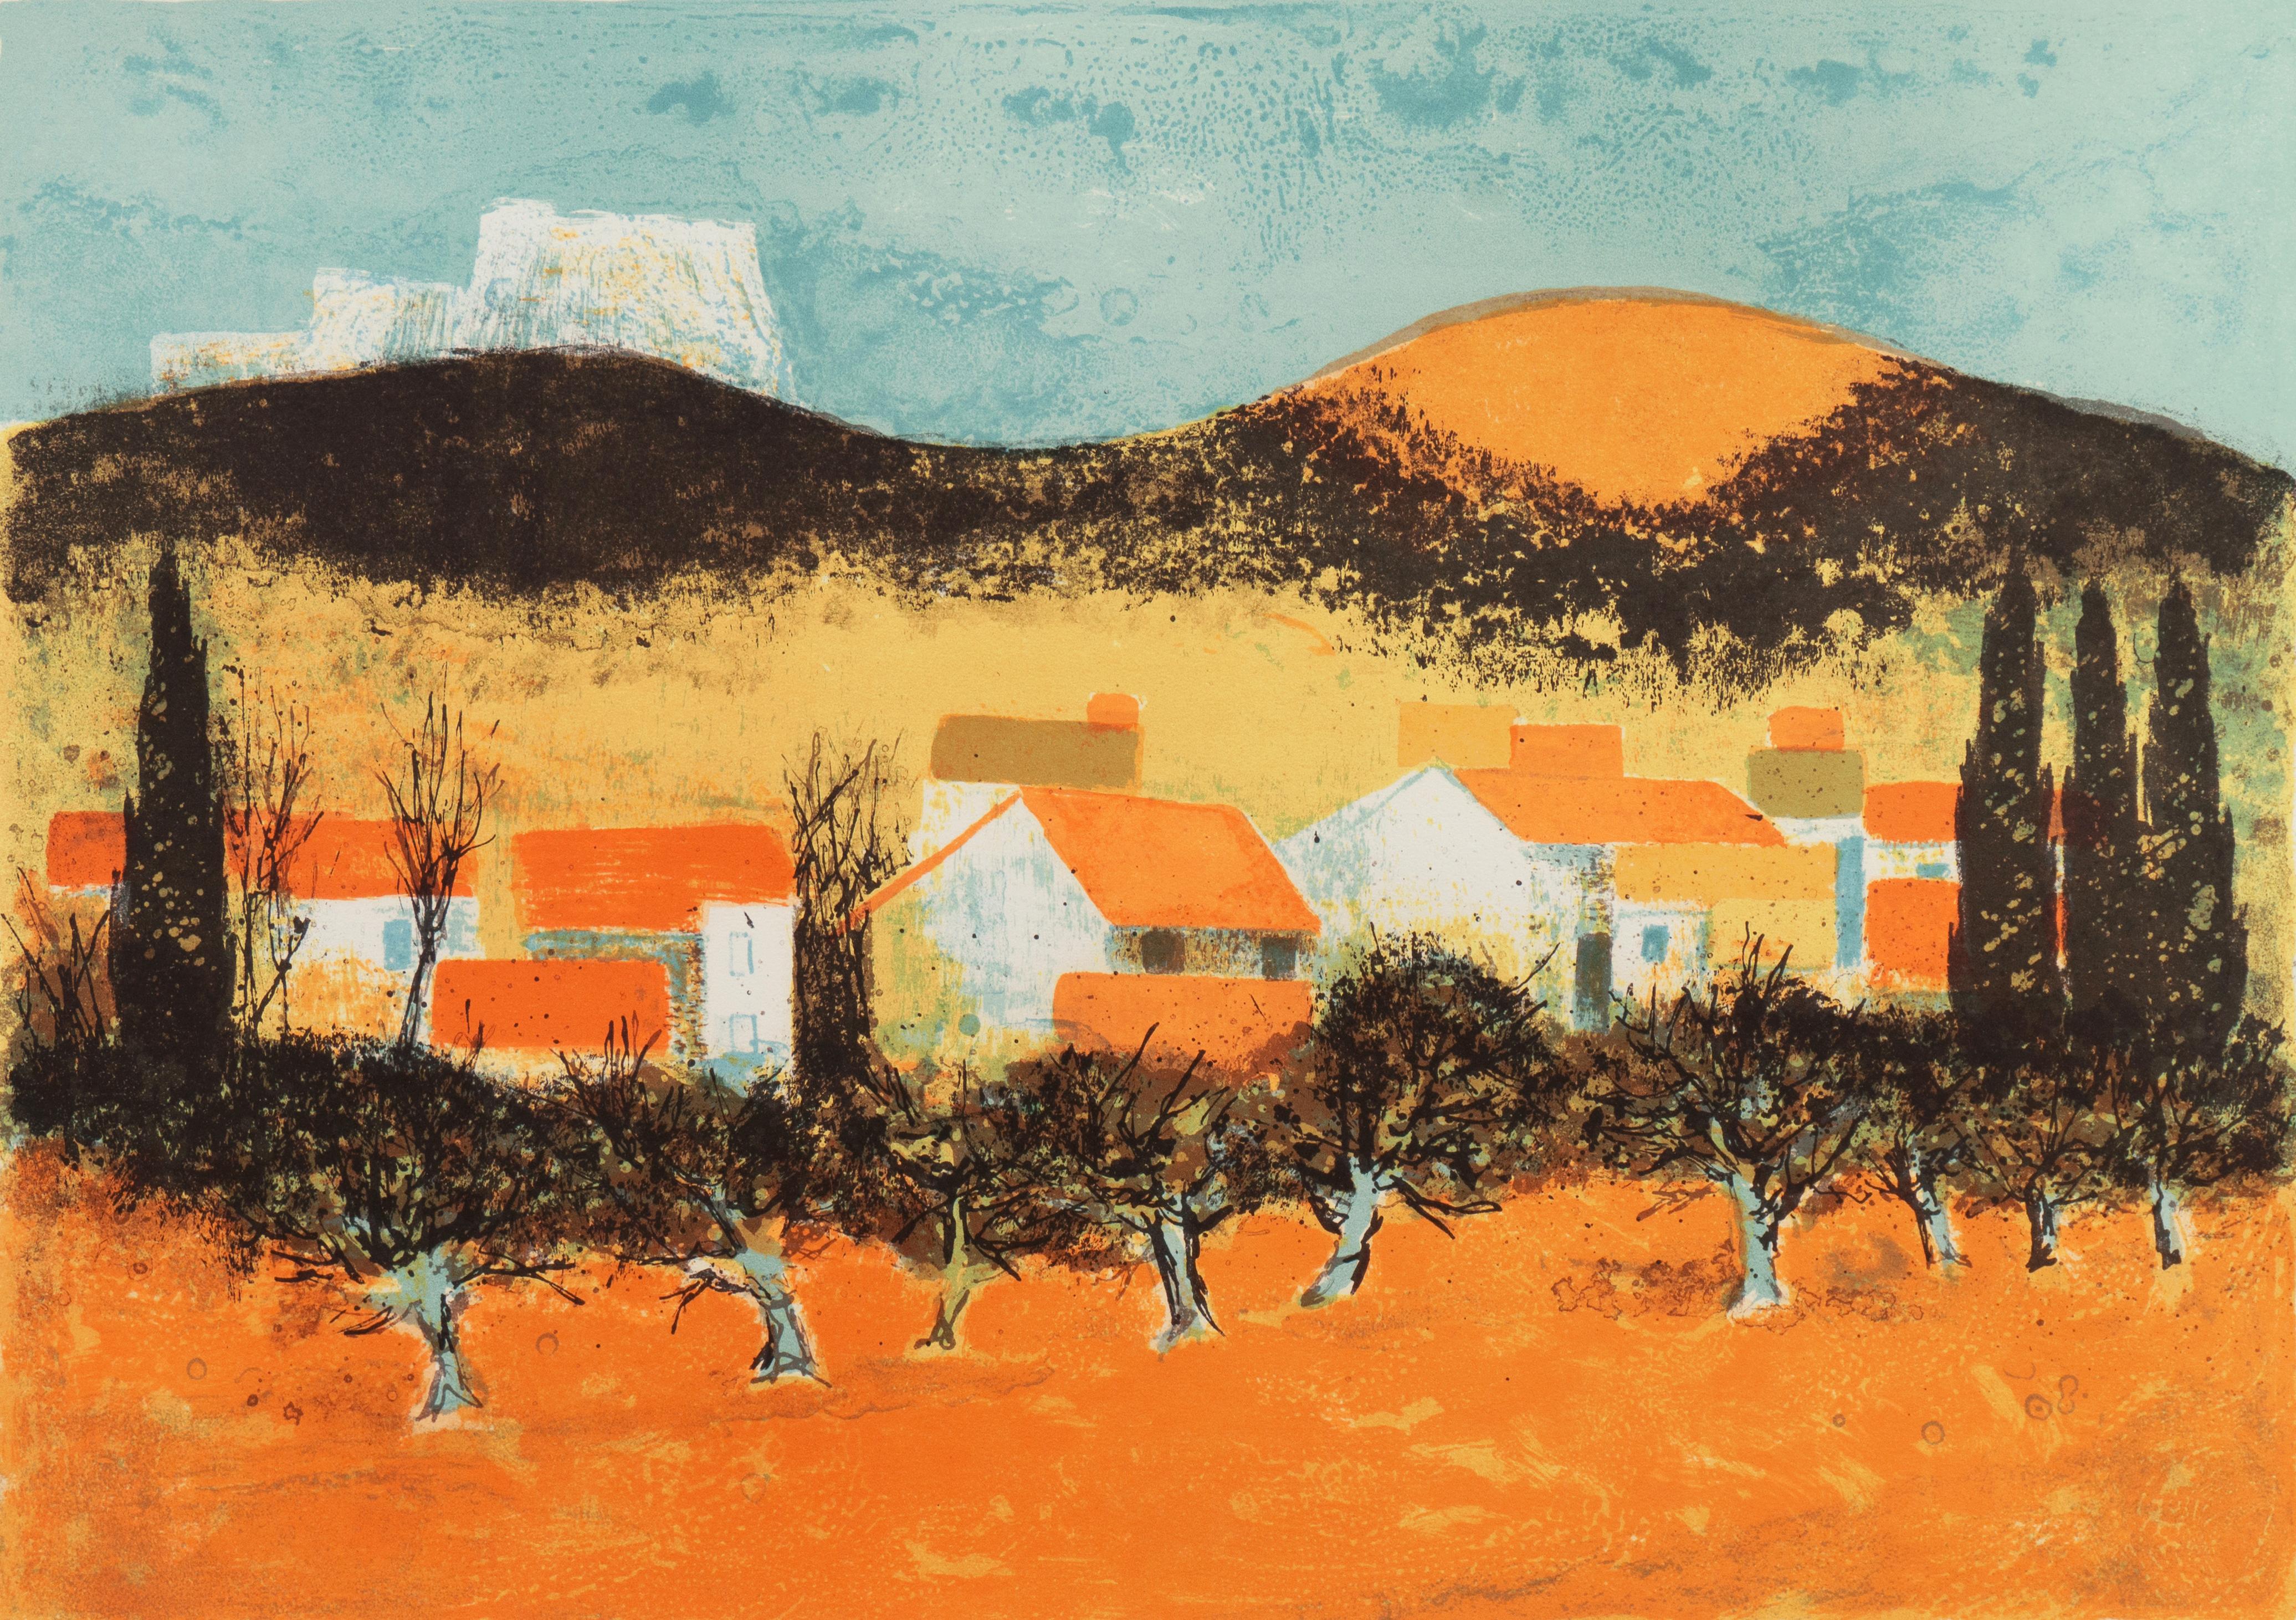 Pierre Bisiaux Landscape Print - 'Sunset over Provence', Paris Salon, Musée d'Art Moderne, Benezit